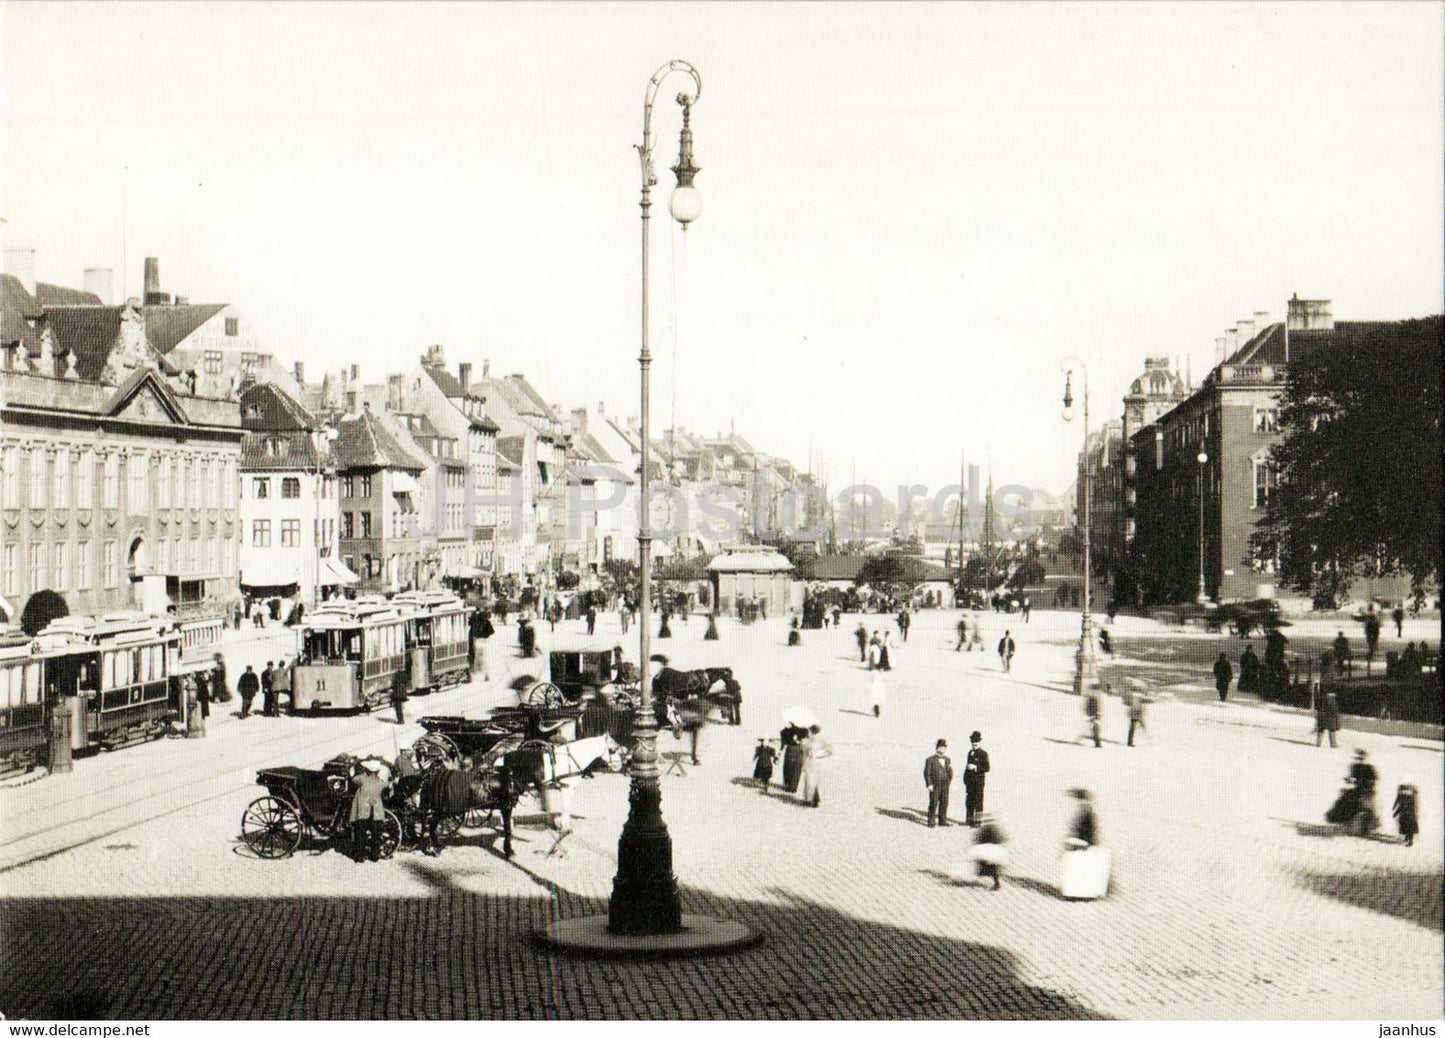 Copenhagen - Kongens Nytorv - Nyhavn - tram - REPRODUCTION - Denmark - unused - JH Postcards